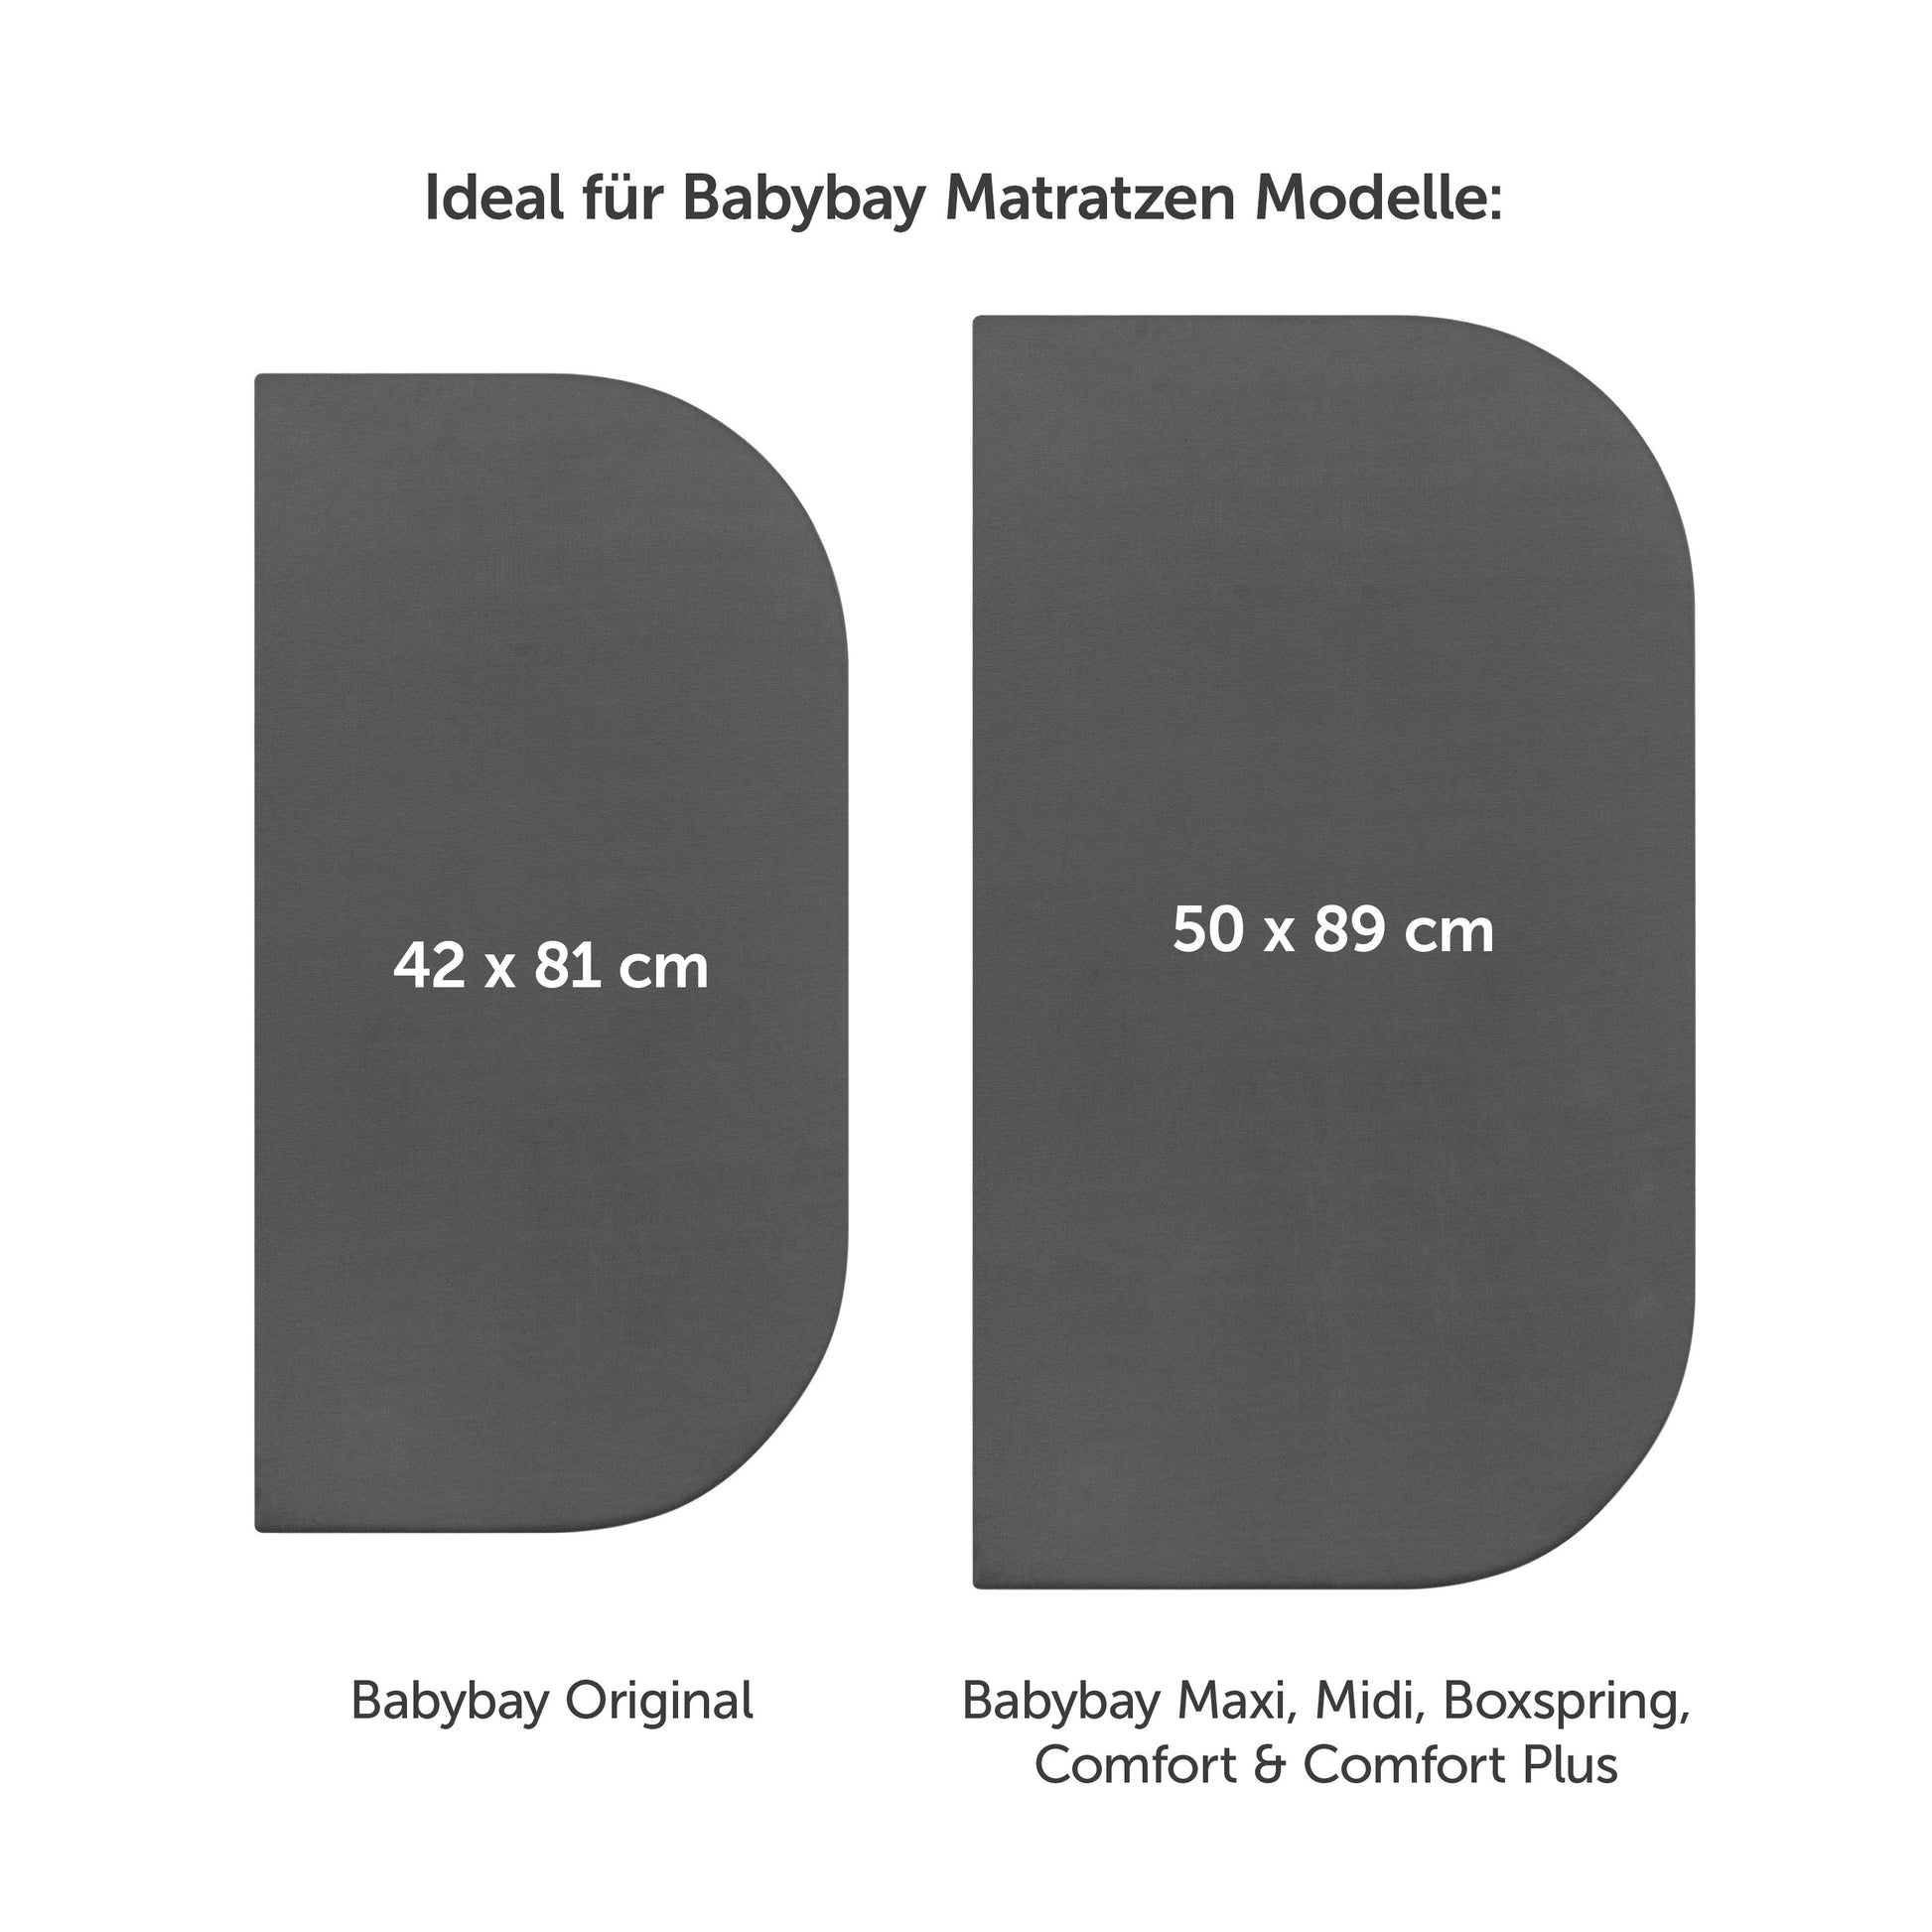 Zwei Spannbetttücher in verschiedenen Größen ideal für anthrazit Matratzenmodelle.